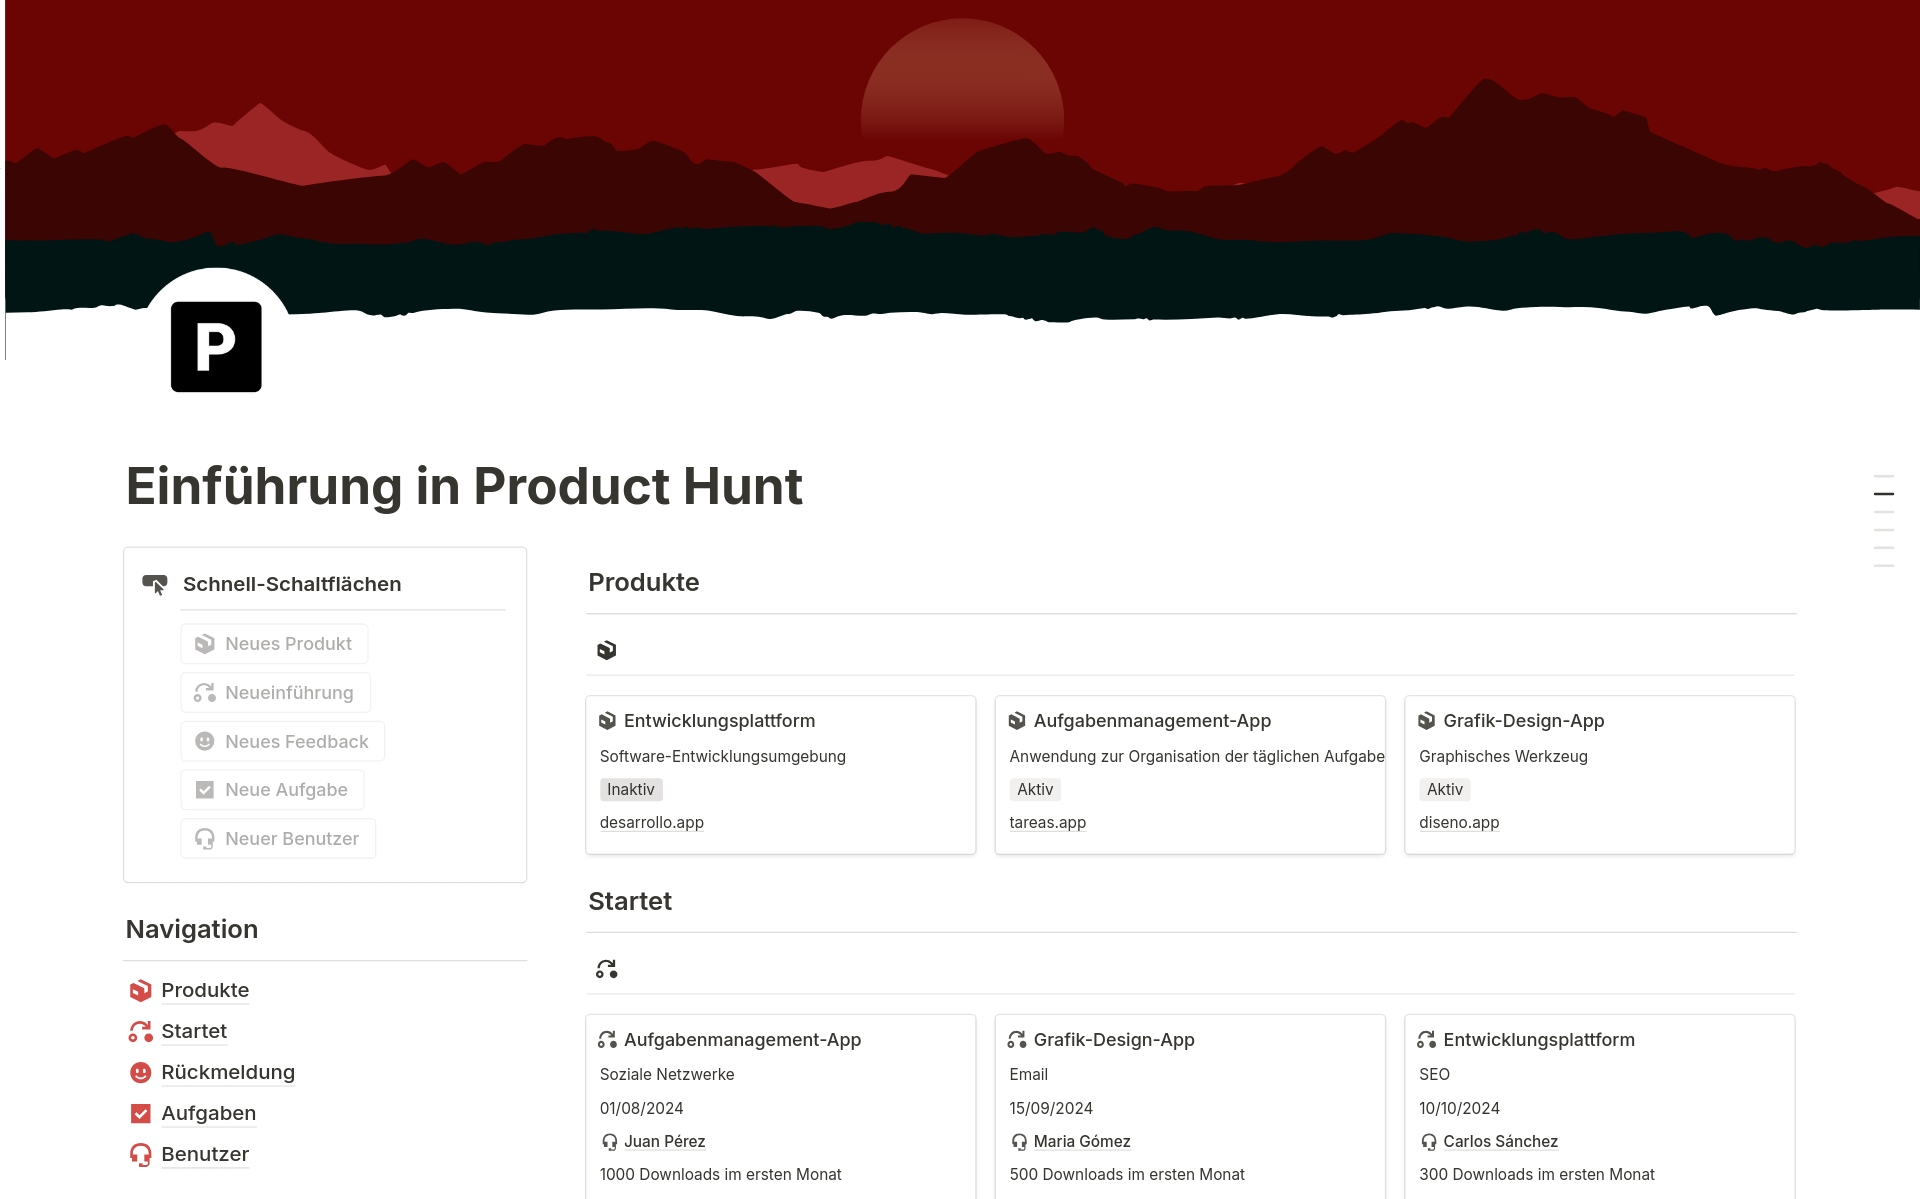 Vista previa de una plantilla para Einführung in Product Hunt